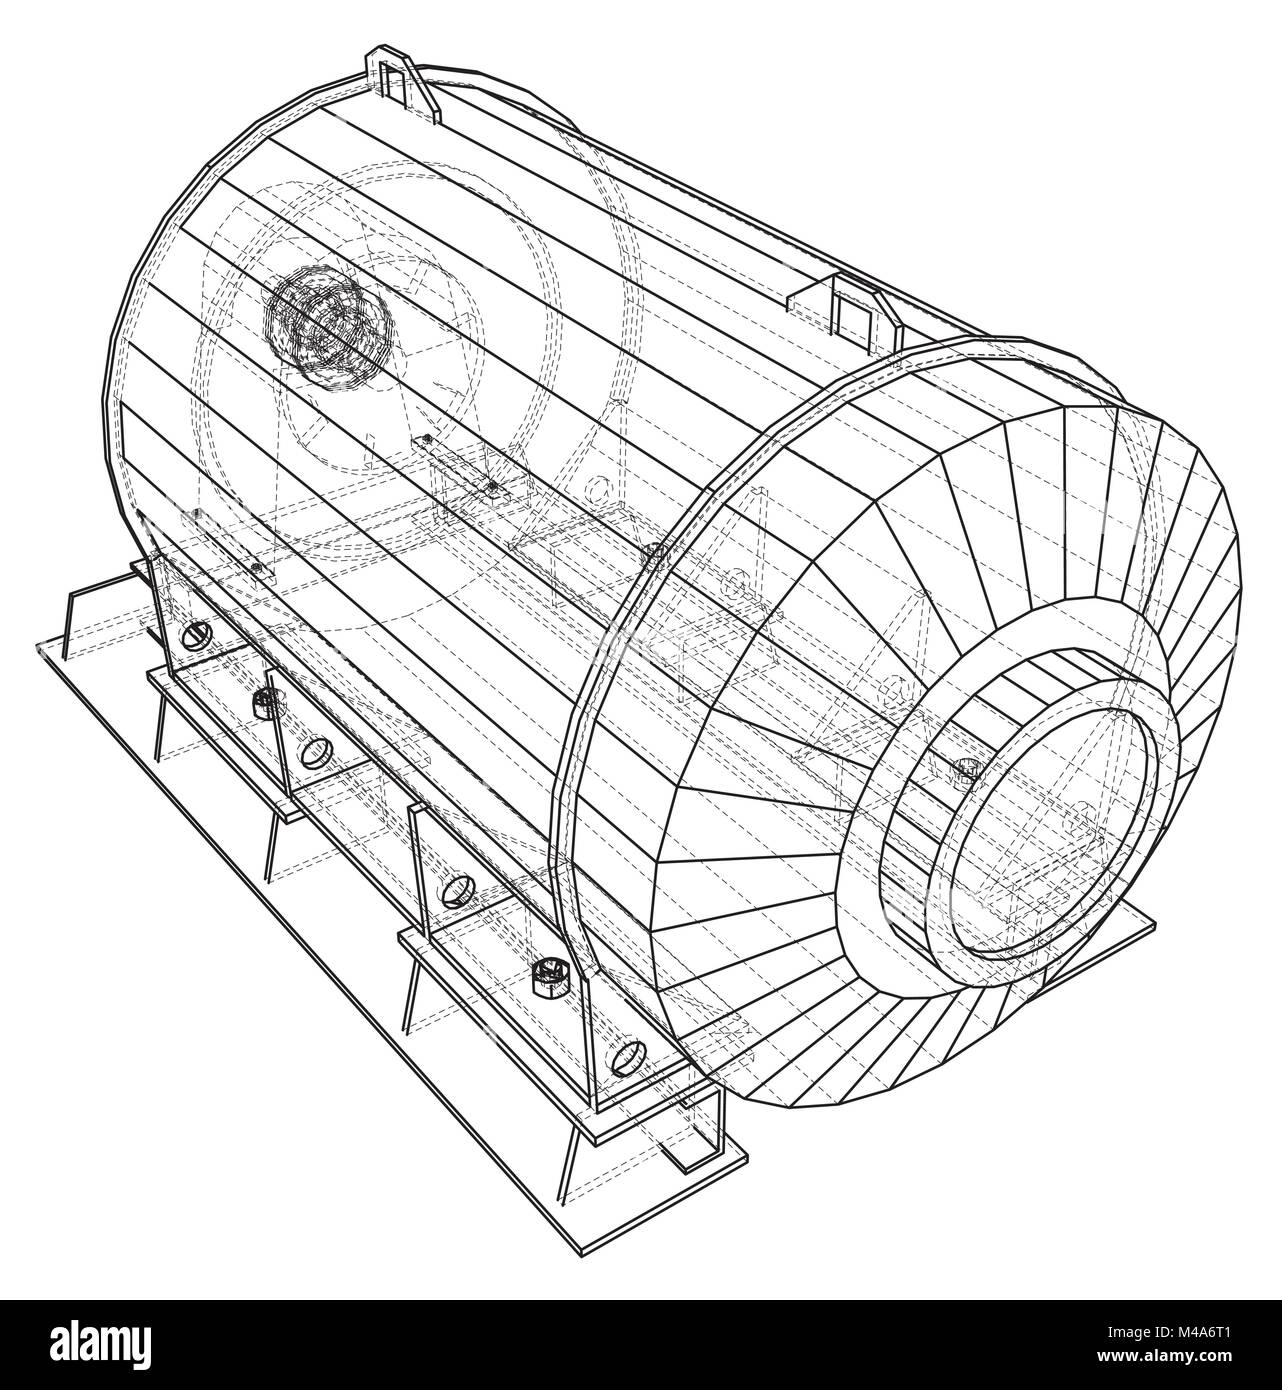 L'équipement industriel en fil de fer et d'huile de la pompe à gaz. Illustration 3d de traçage. Format vectoriel EPS 10. Illustration de Vecteur